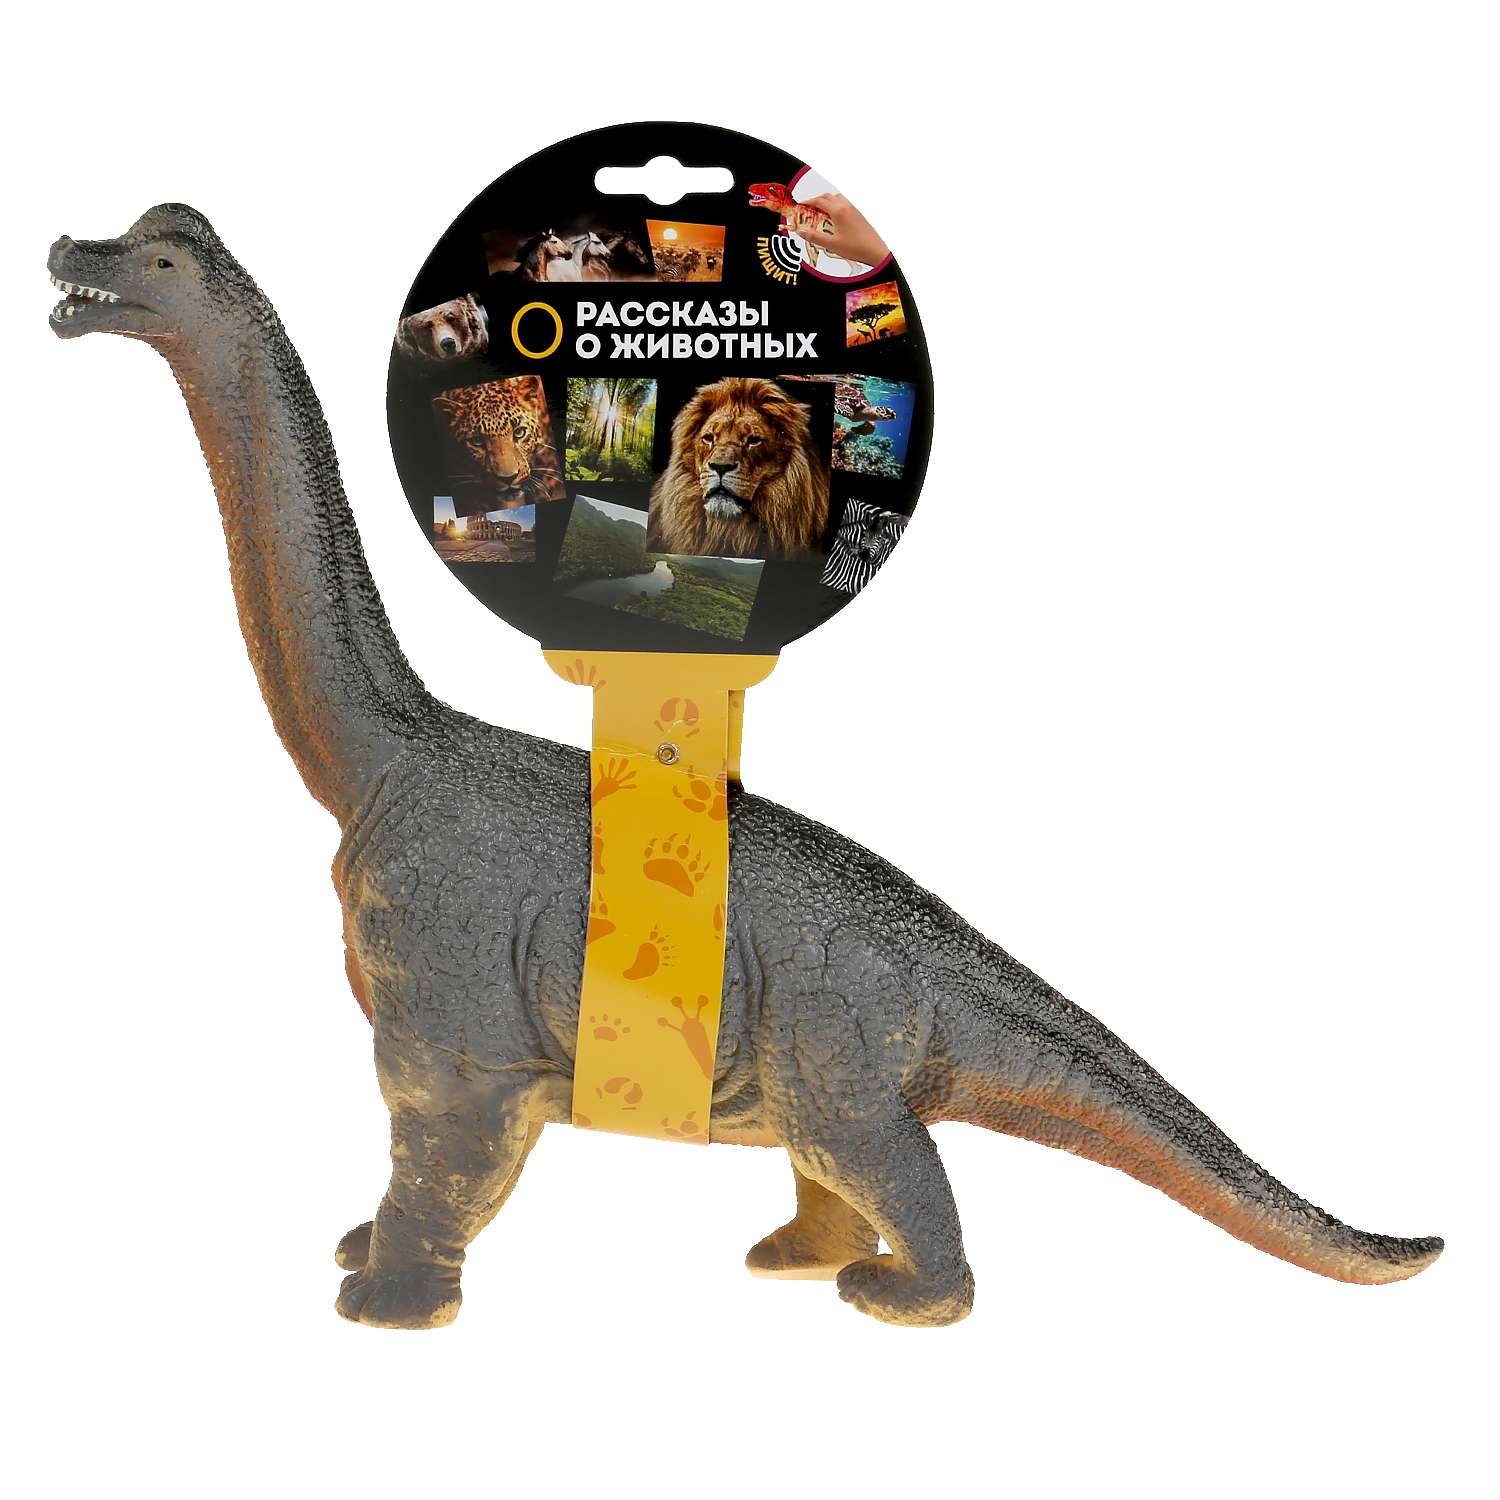 Игрушка Играем Вместе Пластизоль динозавр брахиозавр 298147 - фото 2